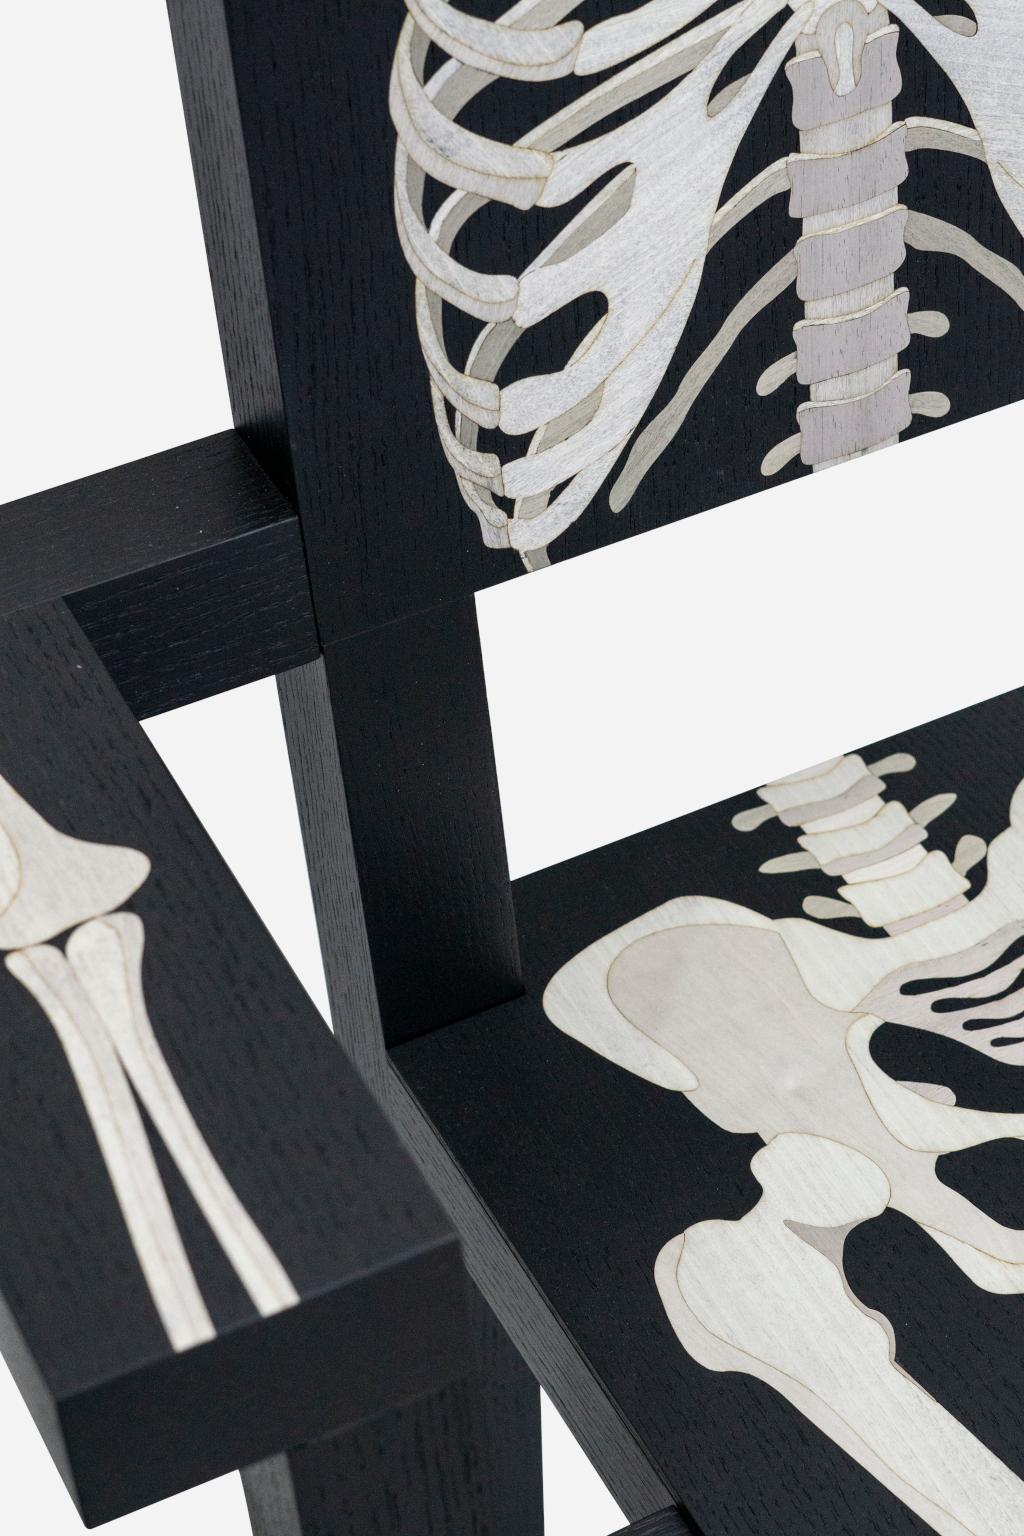 Skeleton chair

Skeleton chair è una sedia scultorea dalle linee rigorose nella quale vengono proiettate
le parti del corpo tramite un preciso intarsio dell’anatomia umana. Realizzata in legno
massiccio e con un’attitudine ironica, Skeleton chair